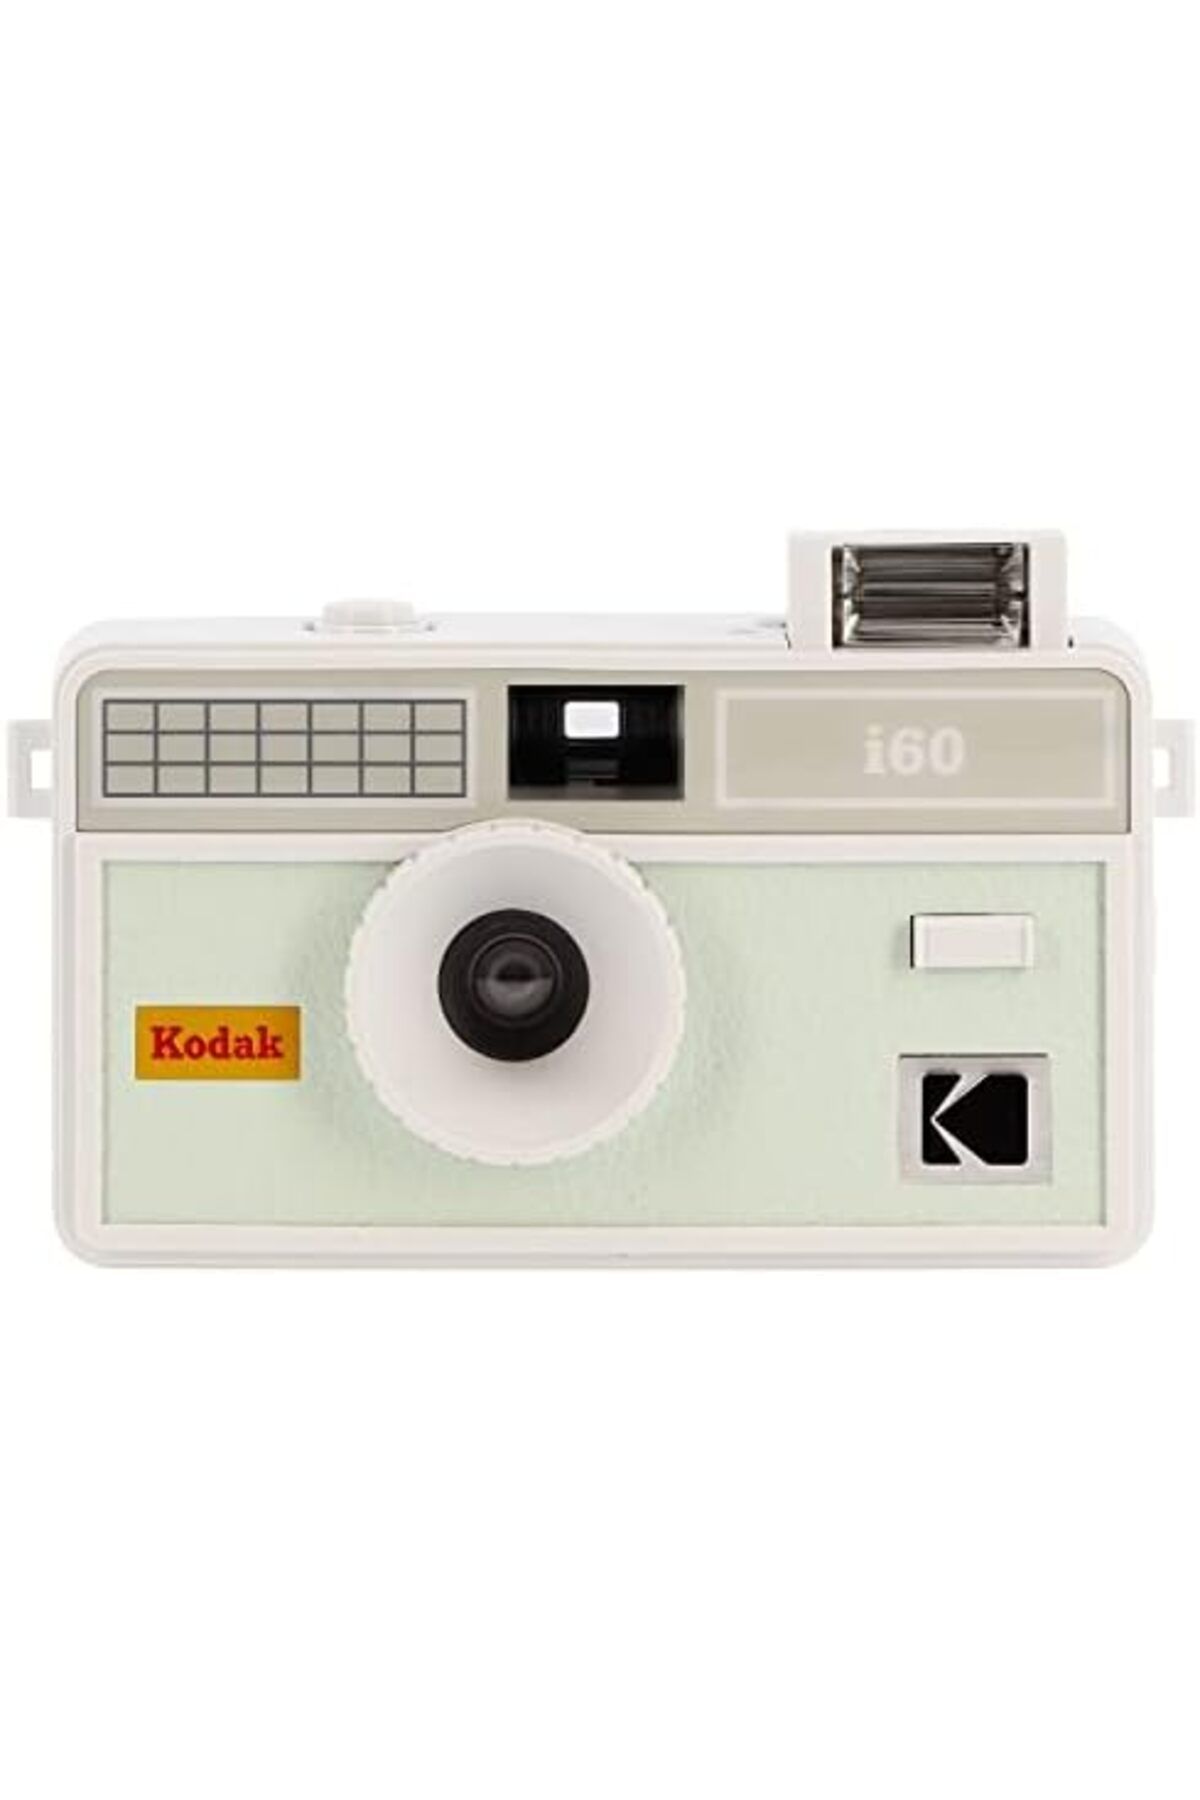 Kodak i60 Yeniden Kullanılabilir 35mm Film Kamerası - Retro Tarzı,